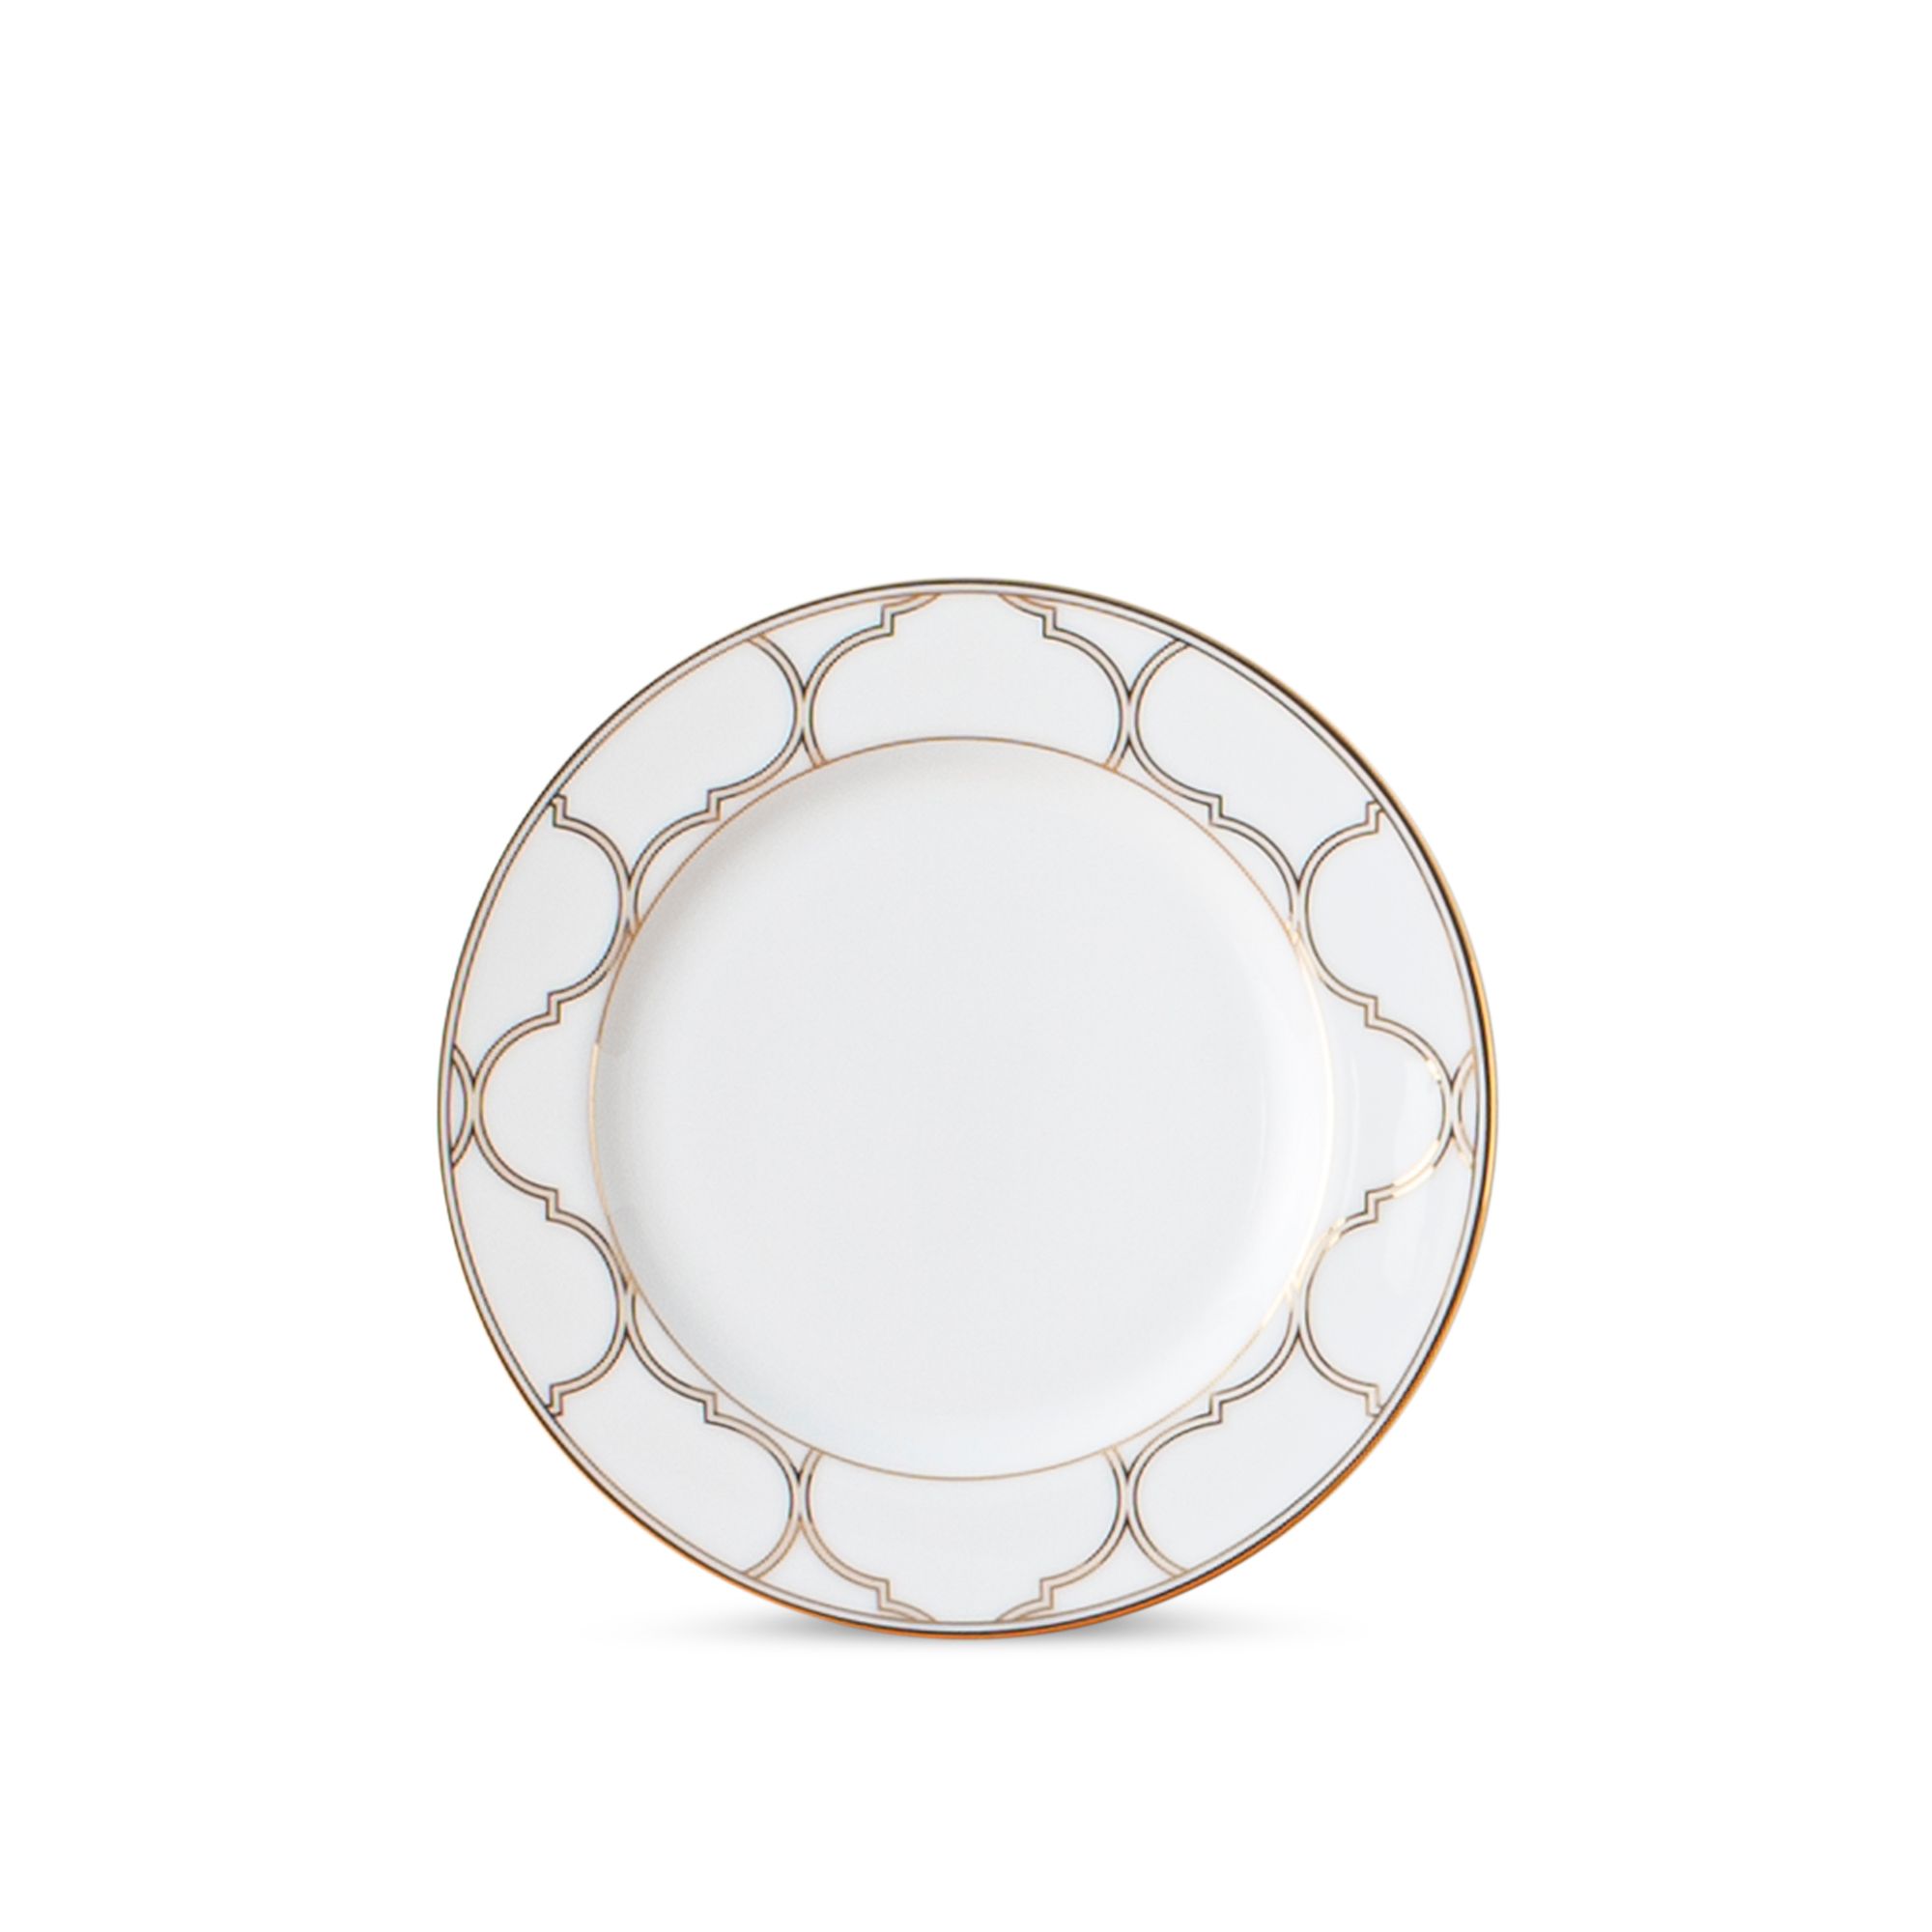  Đĩa tròn cỡ nhỏ đường kính 16,3cm sứ trắng | Eternal Palace Gold 1728L-91012 